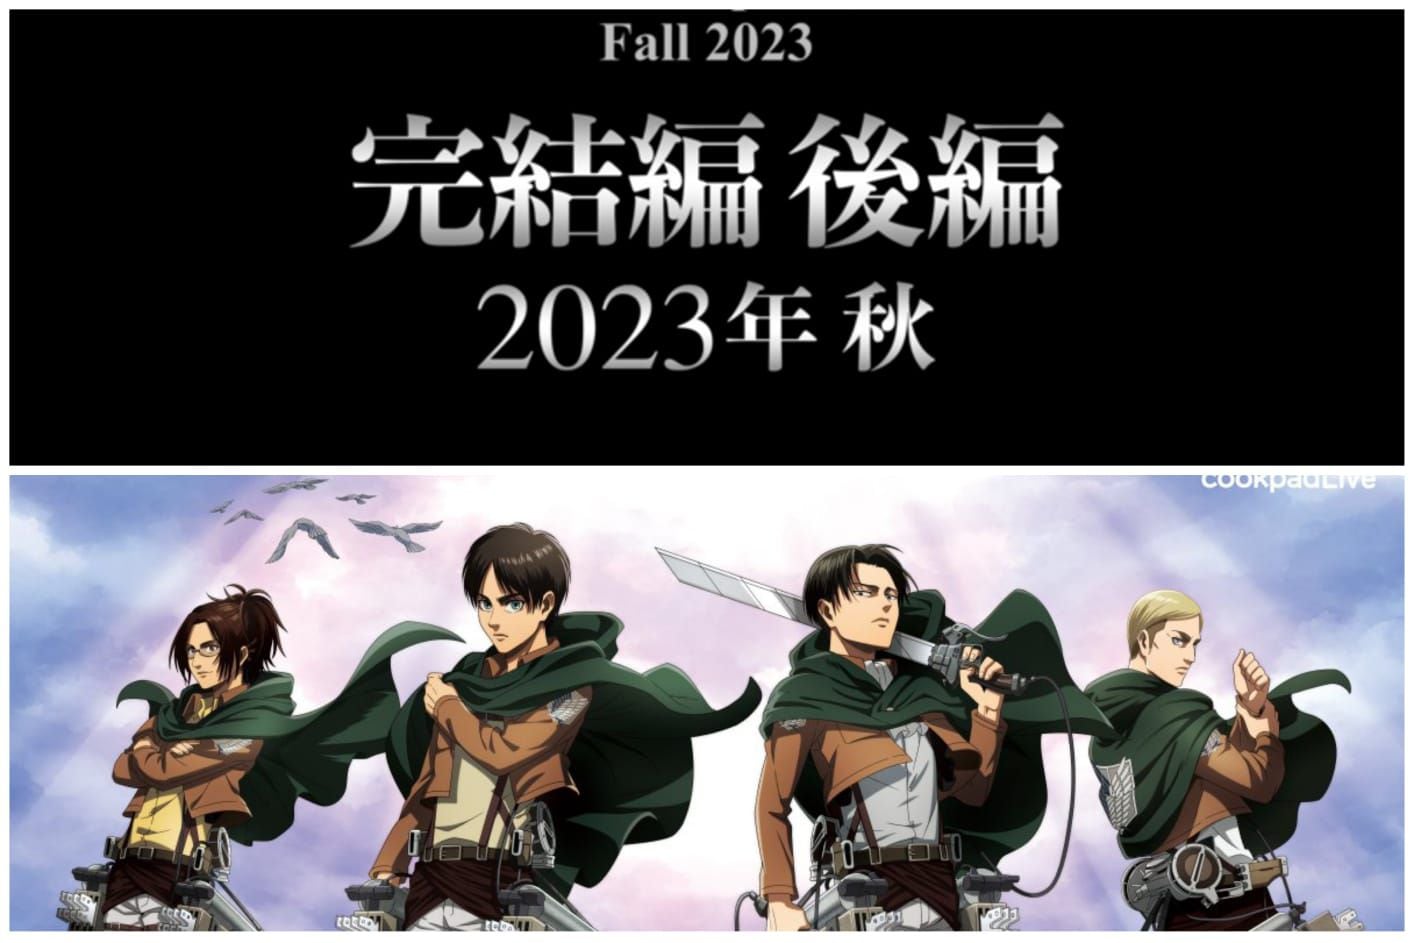 Así sería presentado el episodio final de 'Shingeki no Kyojin' en 2023